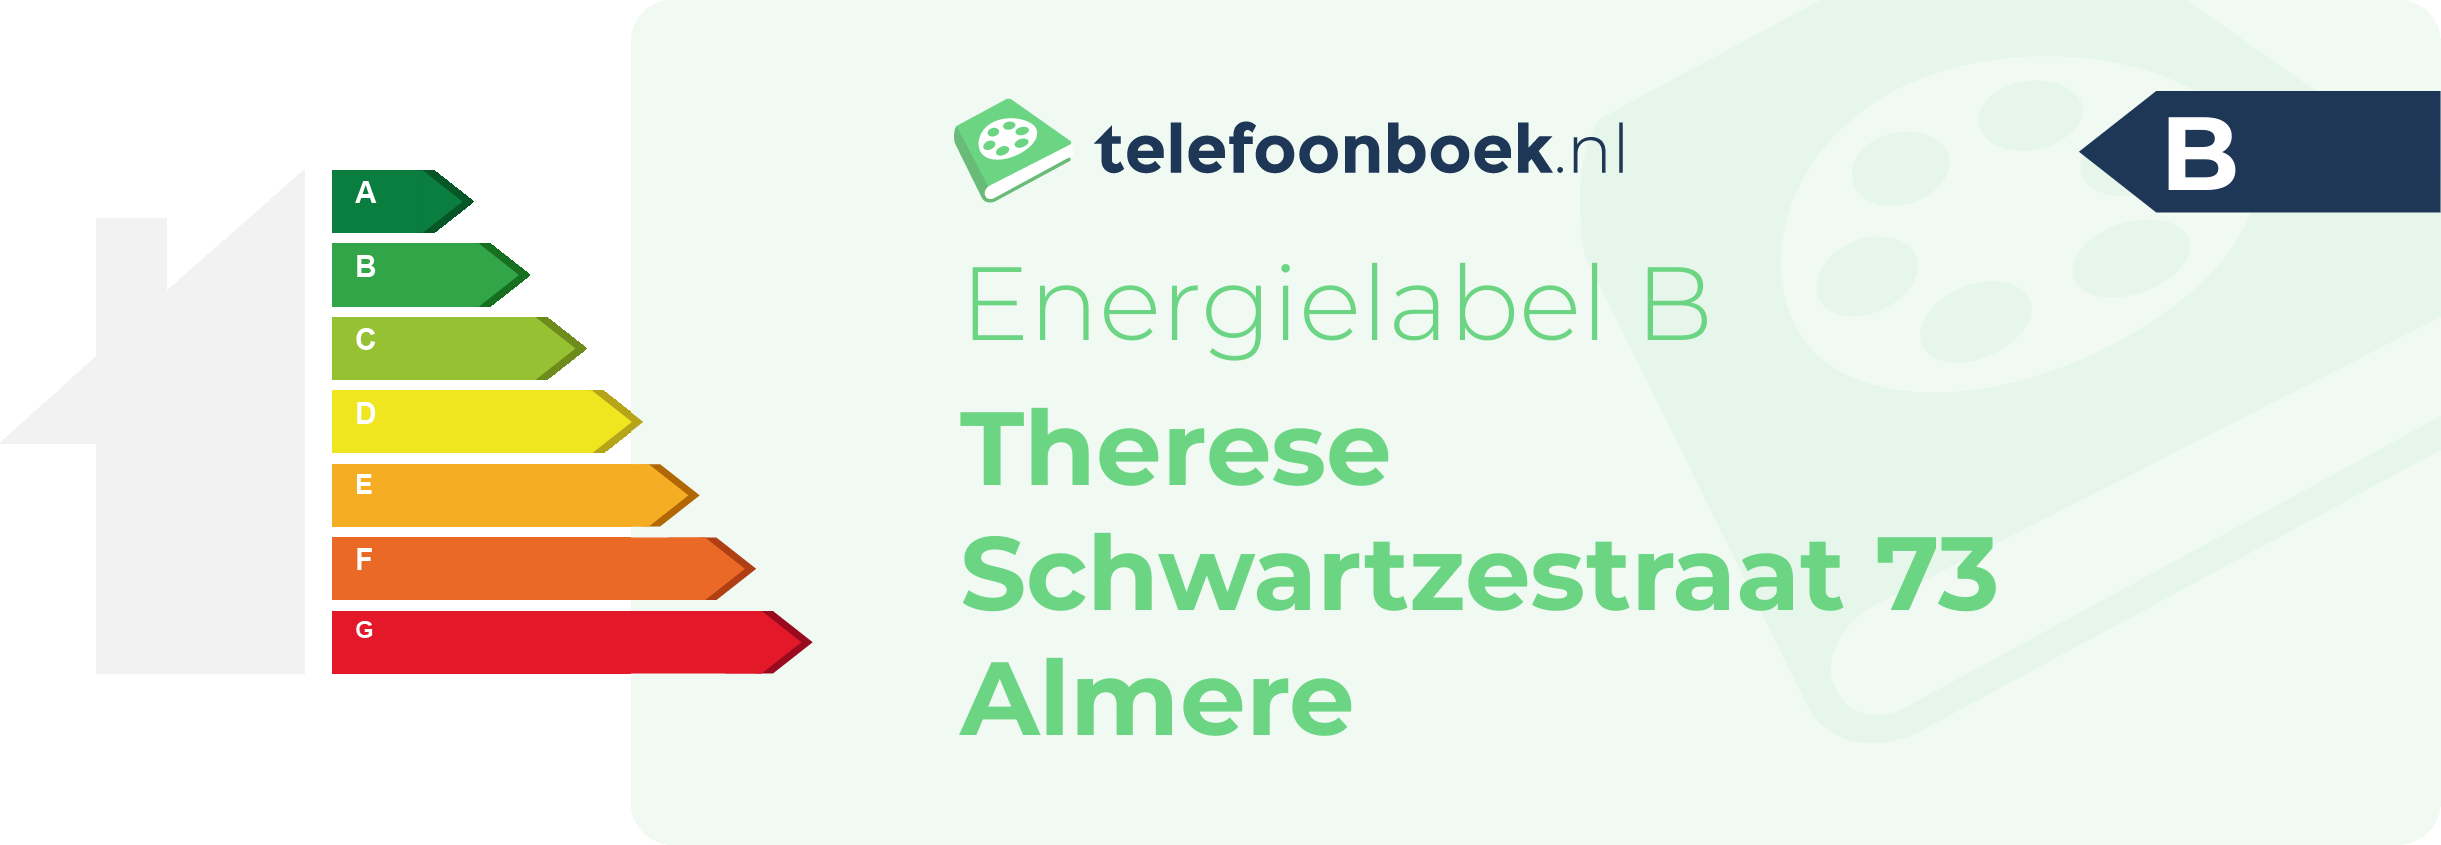 Energielabel Therese Schwartzestraat 73 Almere